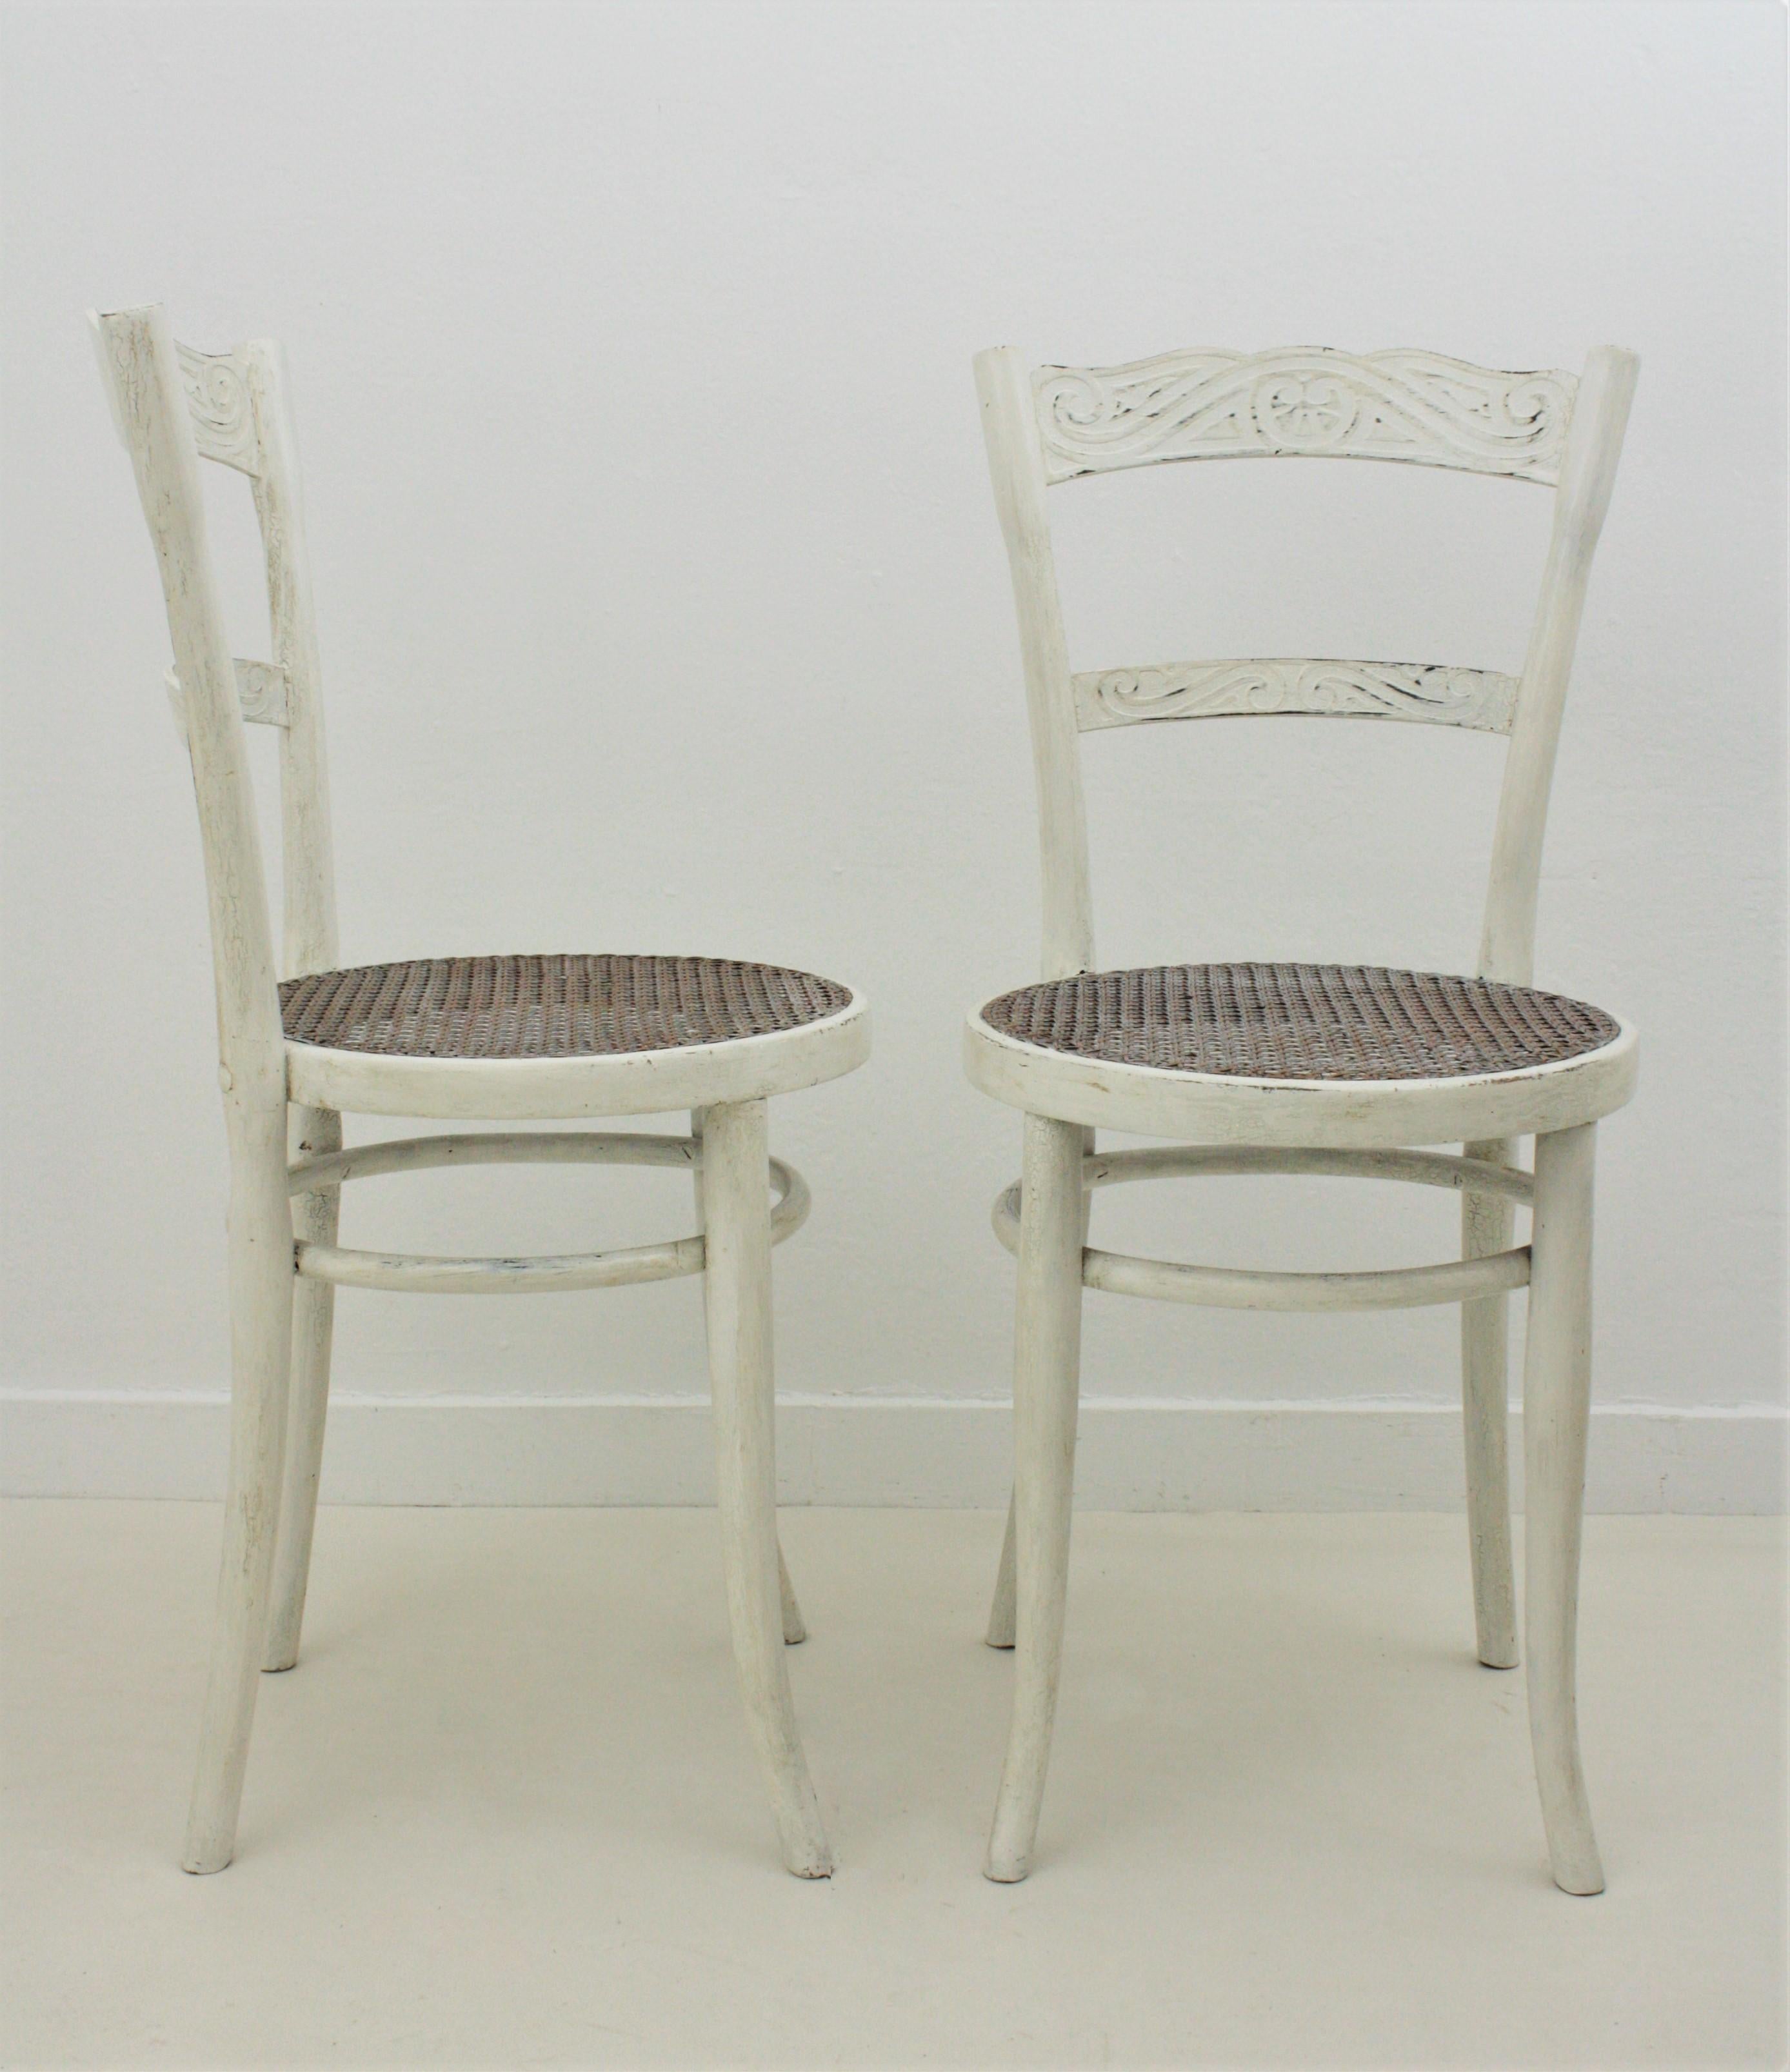 Belle paire de chaises en bois courbé patiné de couleur blanche avec des sièges en cannage. Fabriqué par J & J Kohn. Autriche, années 1900.
Les deux sont marqués de l'étiquette en papier originale du fabricant : Jacob et Josef Kohn, Autriche.